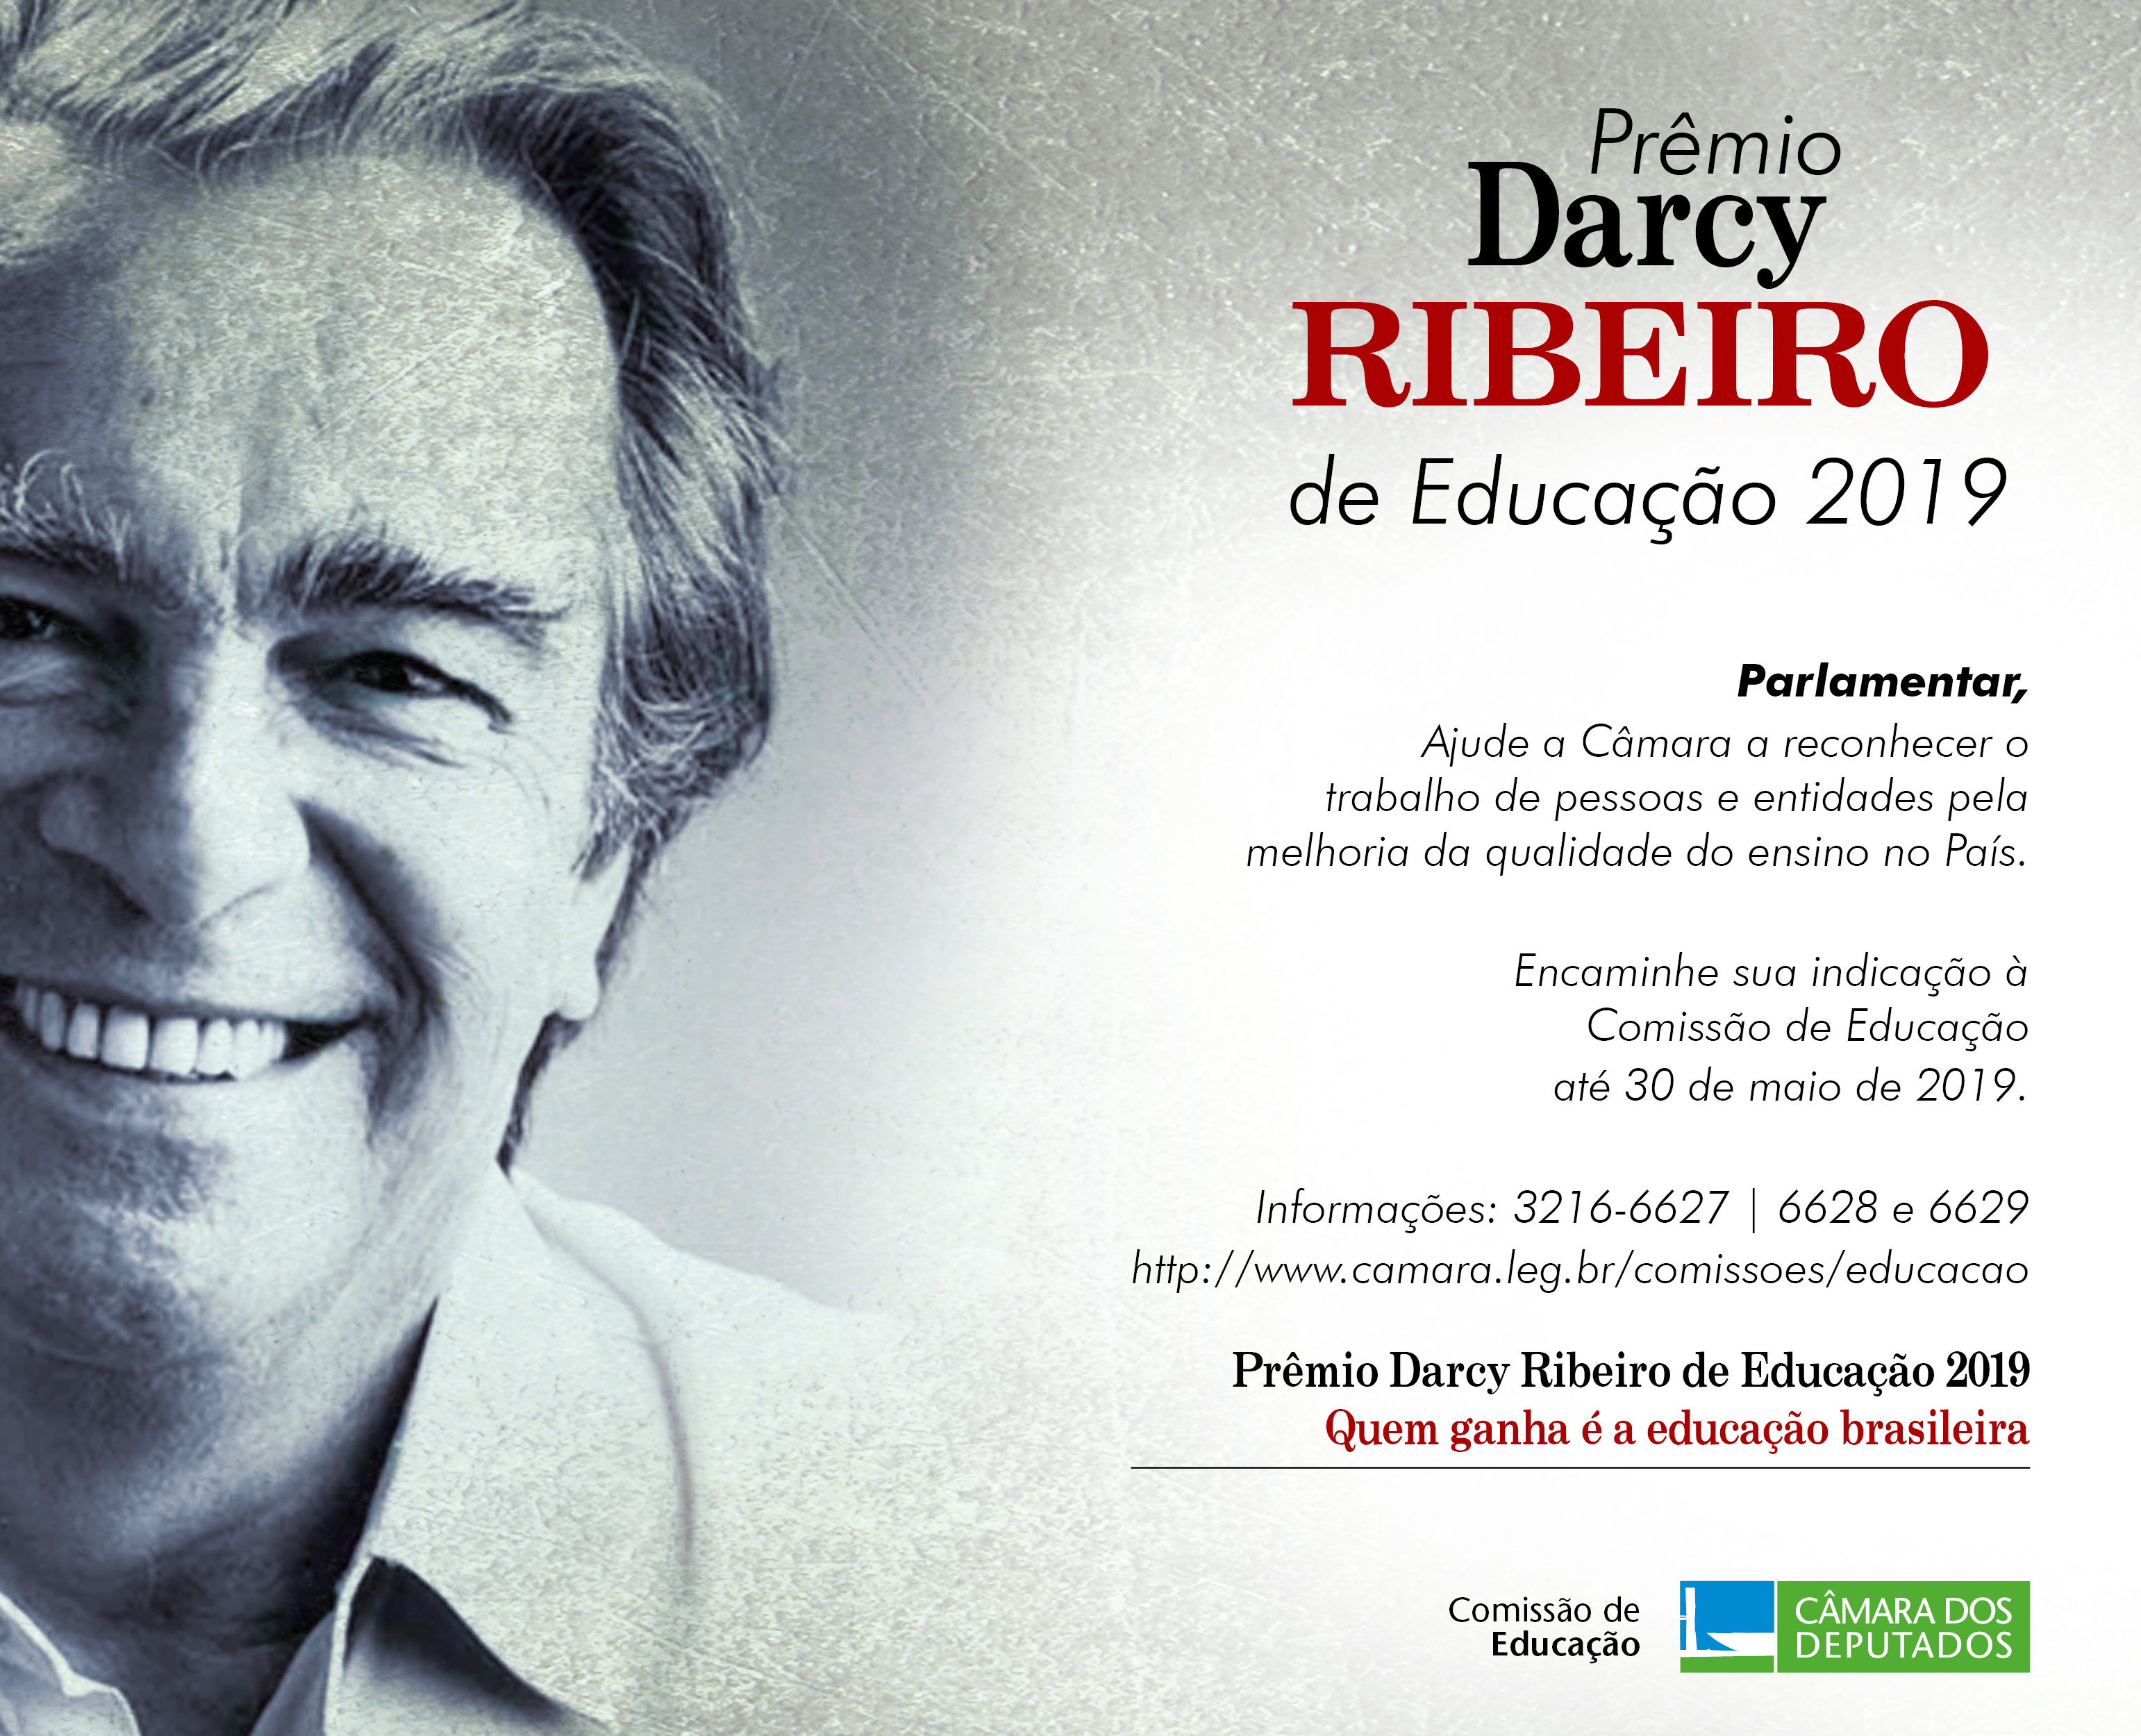 Abertura do Prazo de Indicações para o Prêmio Darcy Ribeiro de Educação - Edição 2019